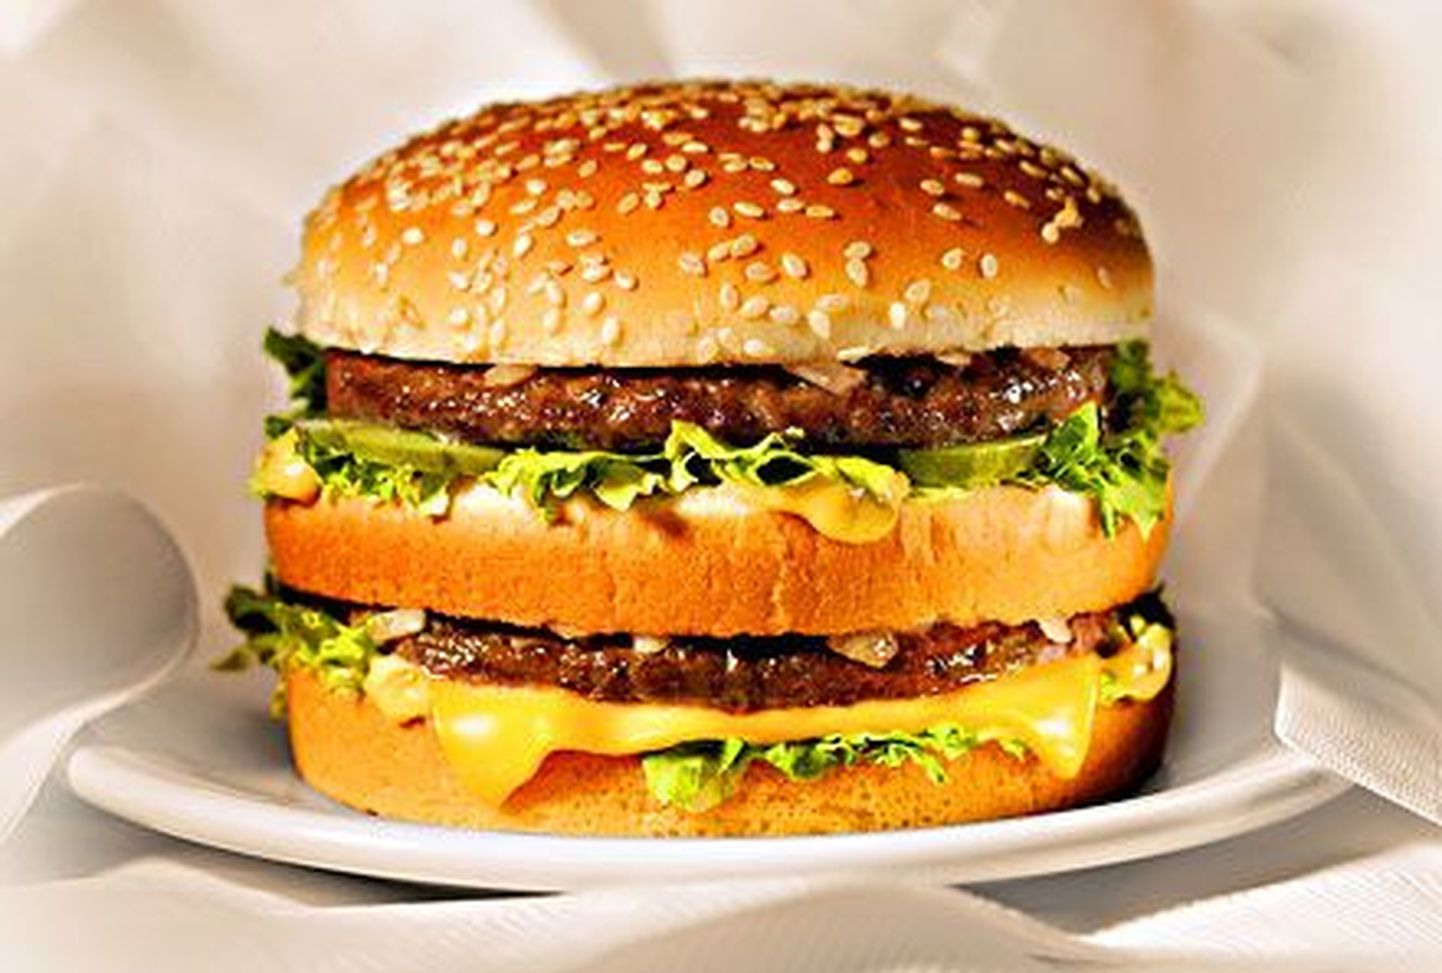 Ilusa väljanägemisega burger kutsub kõiki sööma.